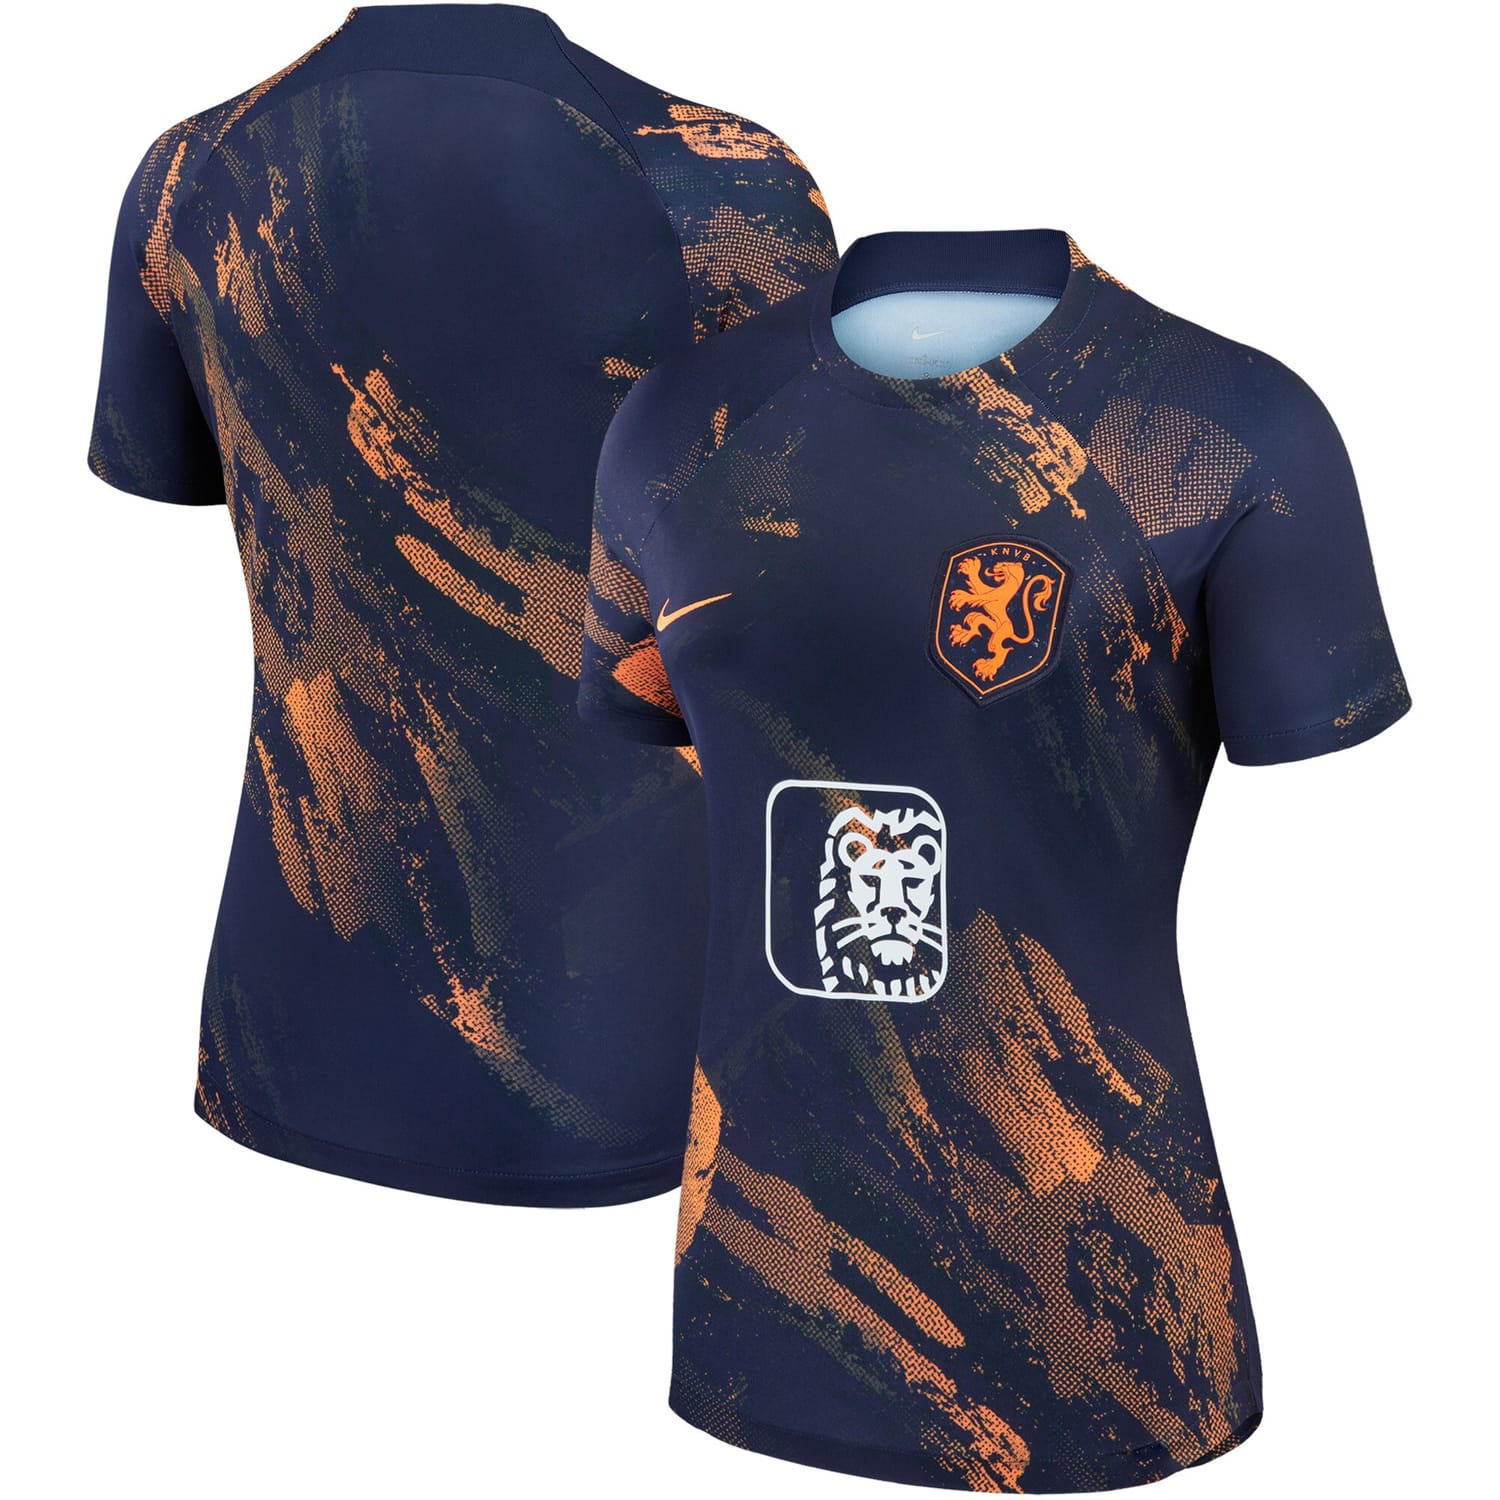 Netherlands Women's National Team Pre-Match Jersey Shirt Navy 2023 for Women